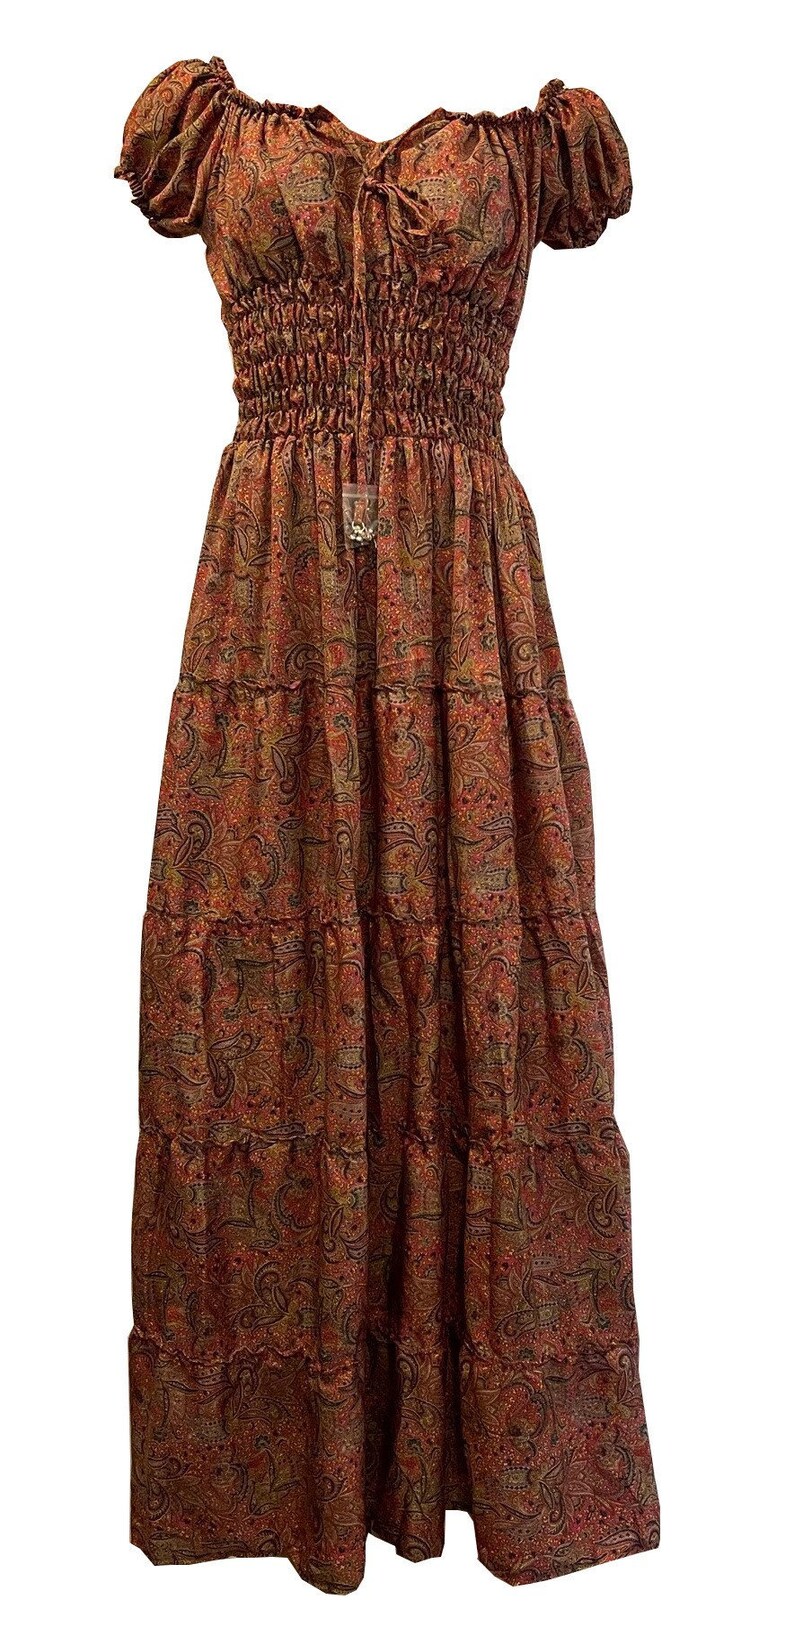 Bohemian Dress Renaissance Peasant Gown Cottagecore - Etsy